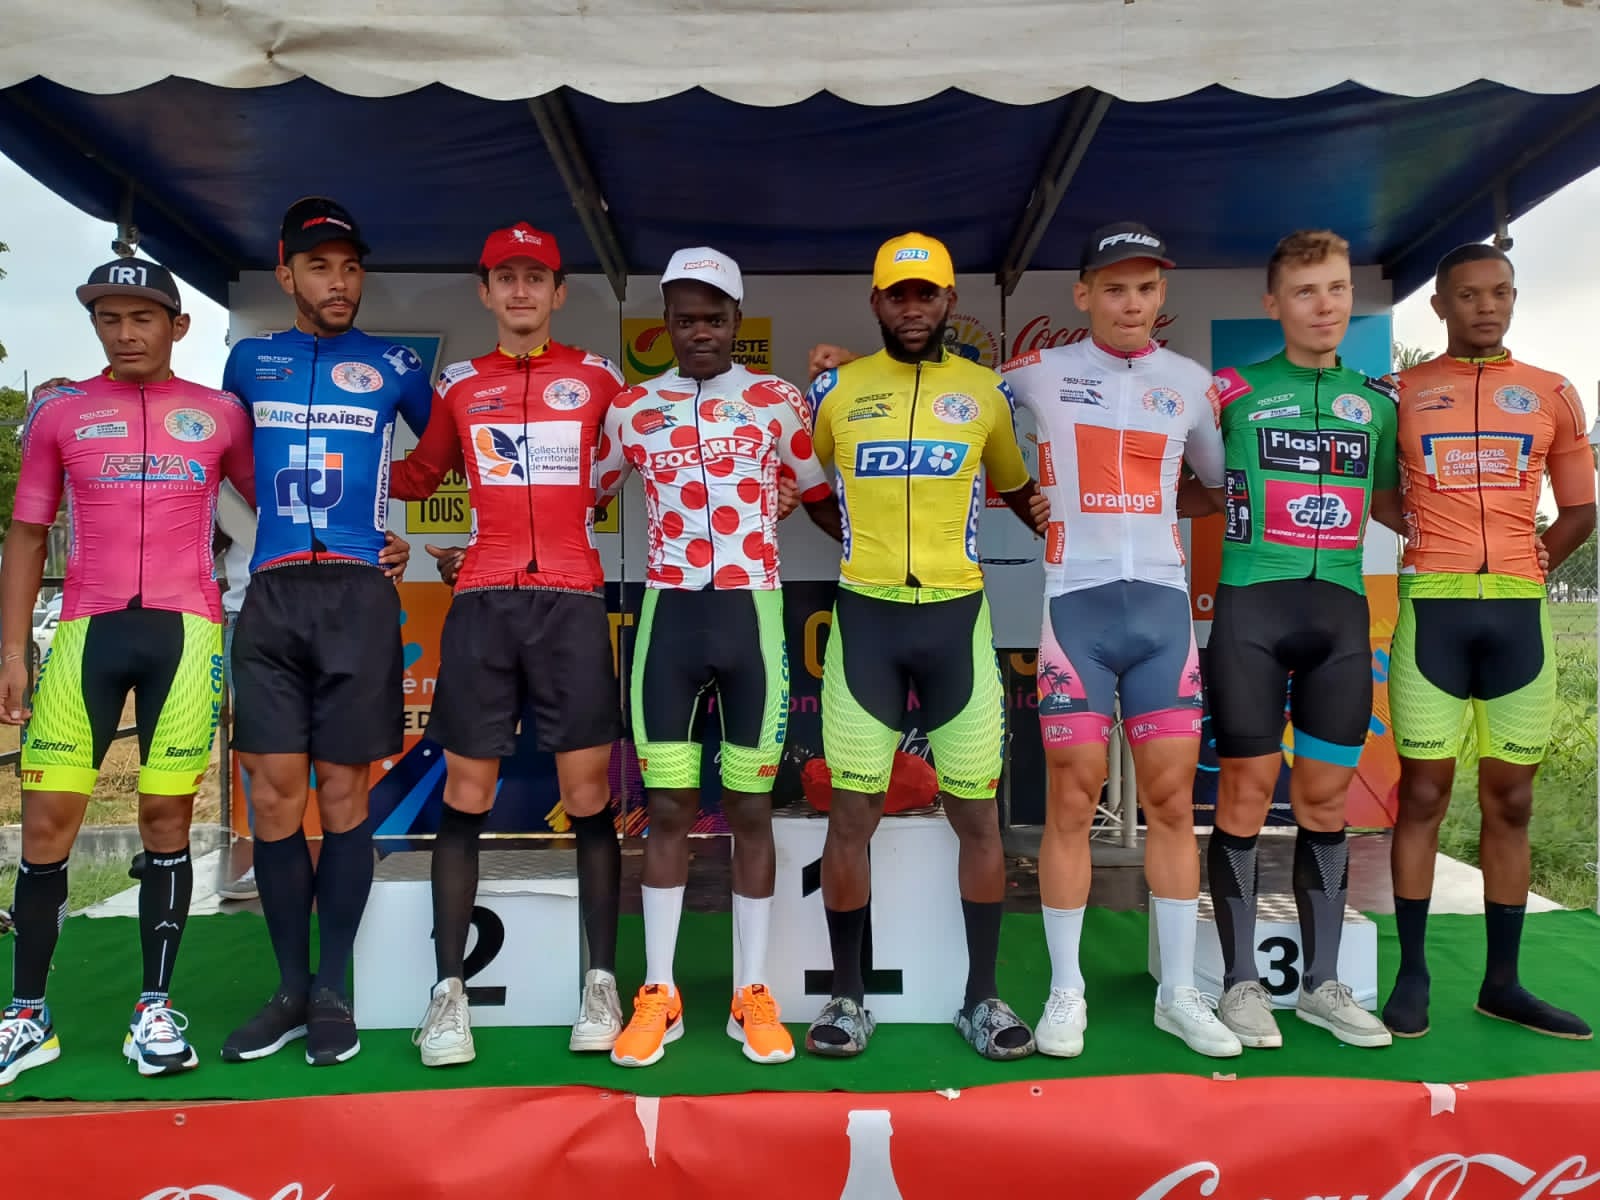     Tour cycliste de Martinique : les porteurs de maillot de la troisième étape

